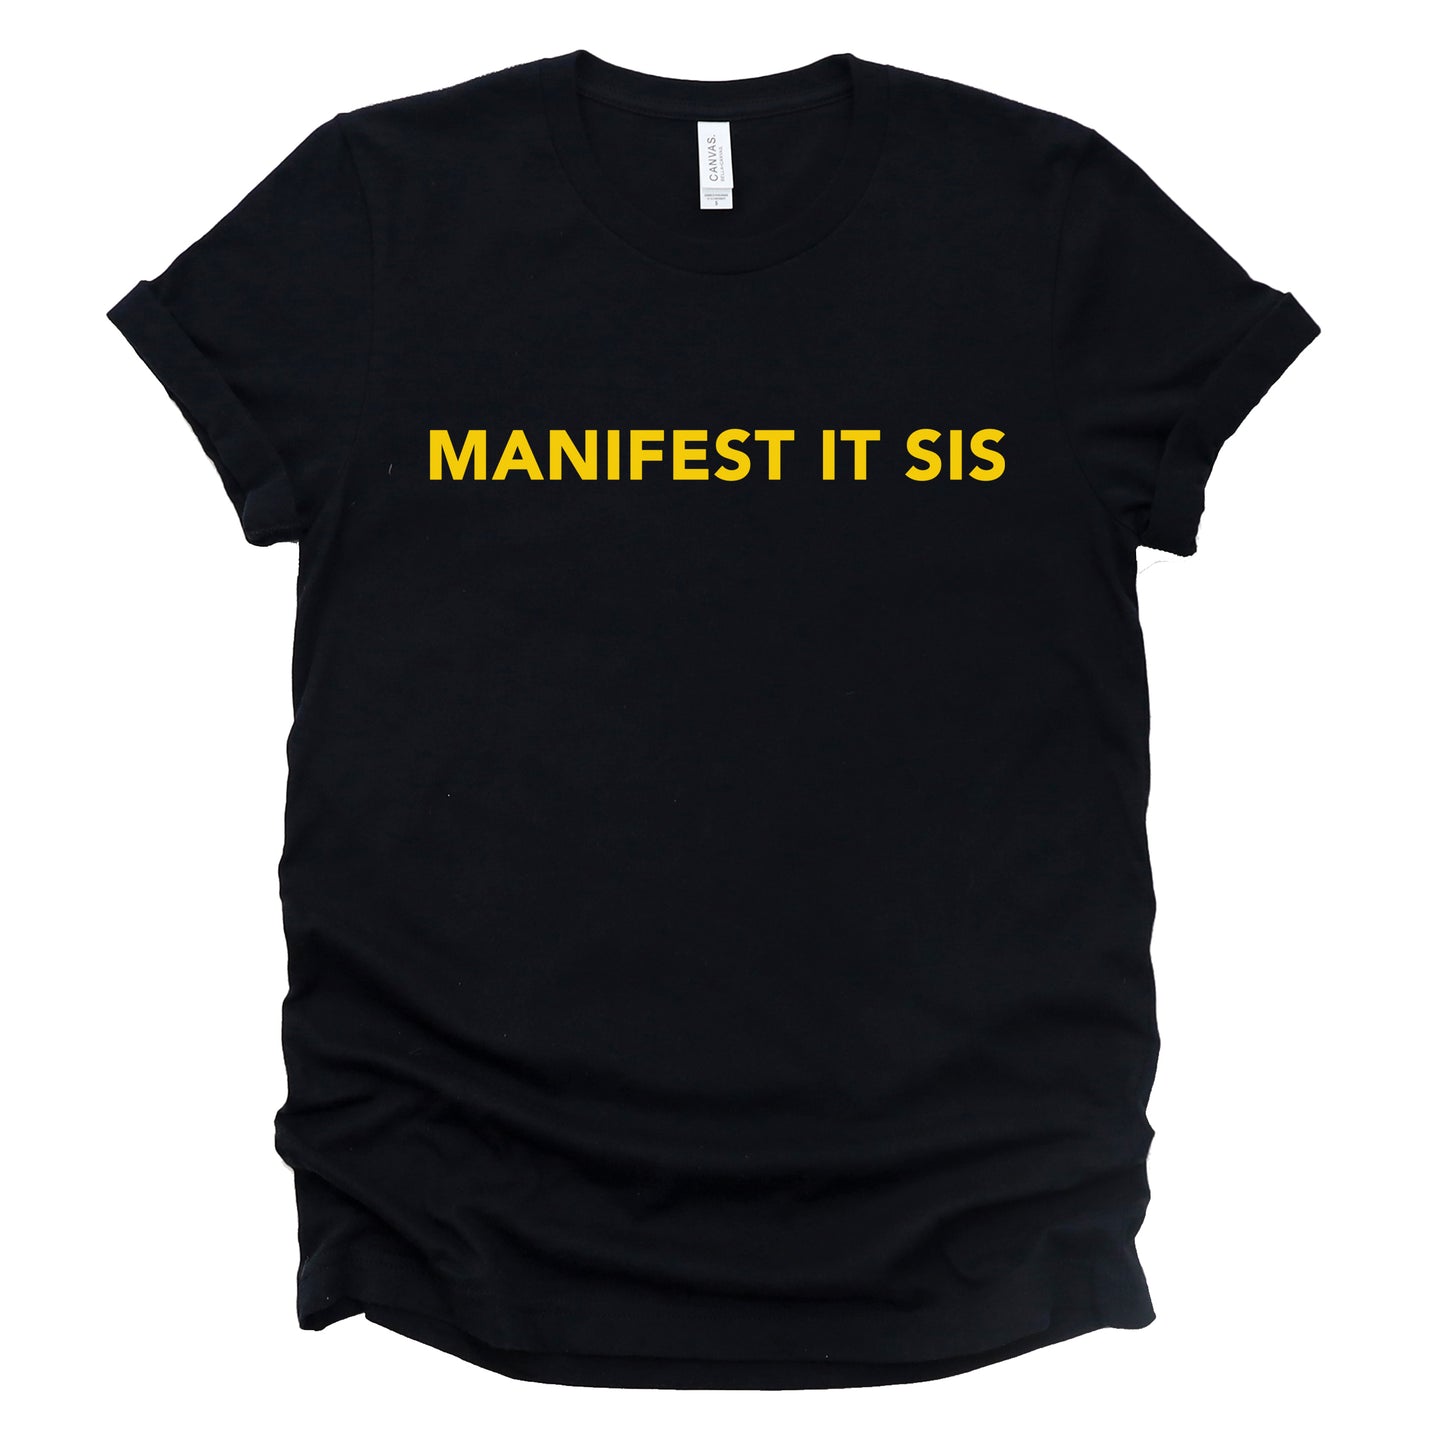 "Manifest It Sis" Tee